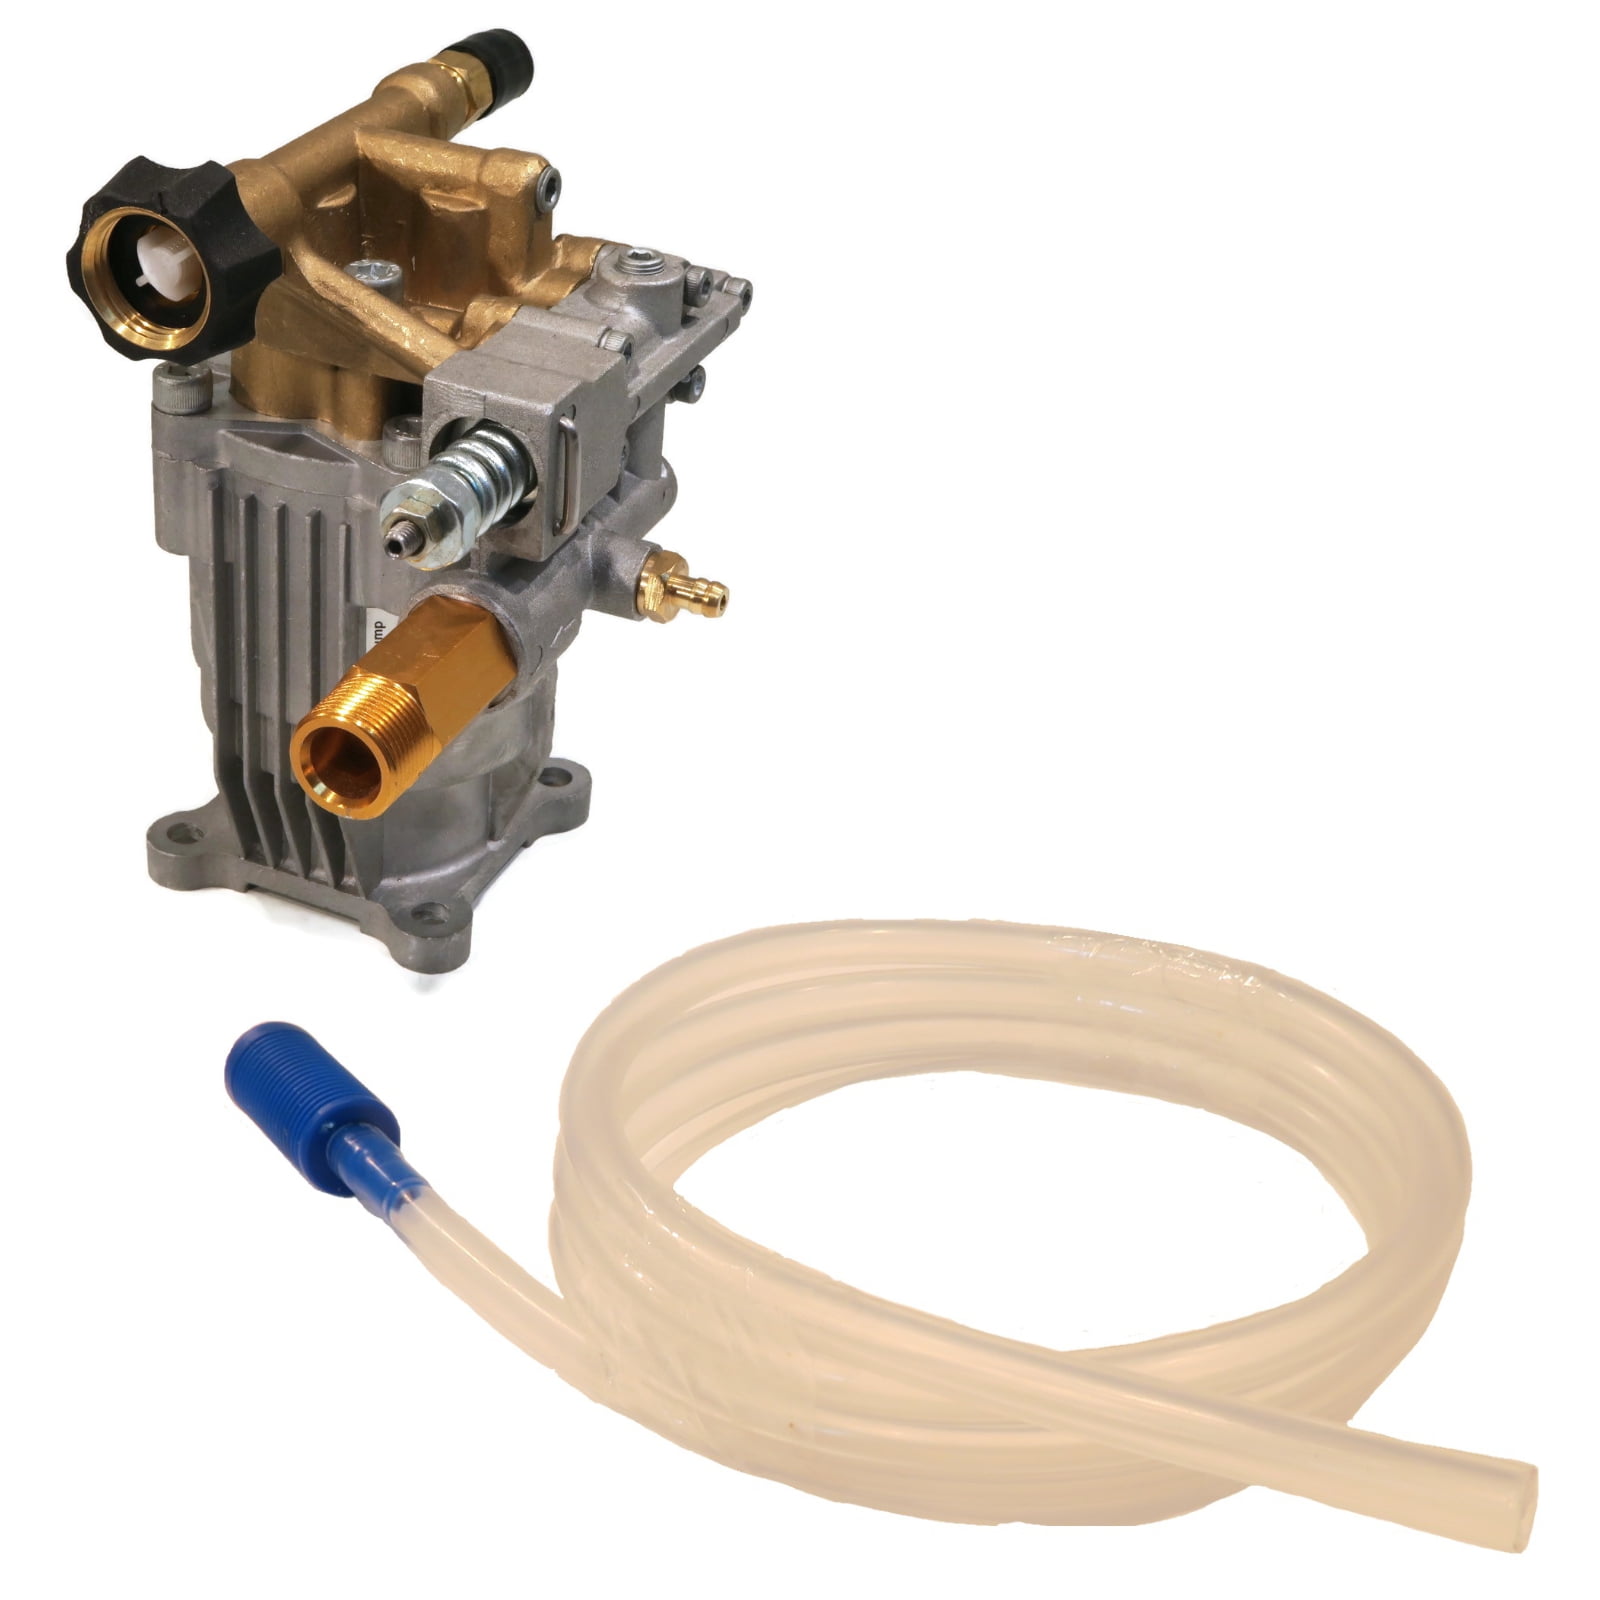 For Karcher 3000 PSI Pressure Washer w/ Honda Engine Carburetor